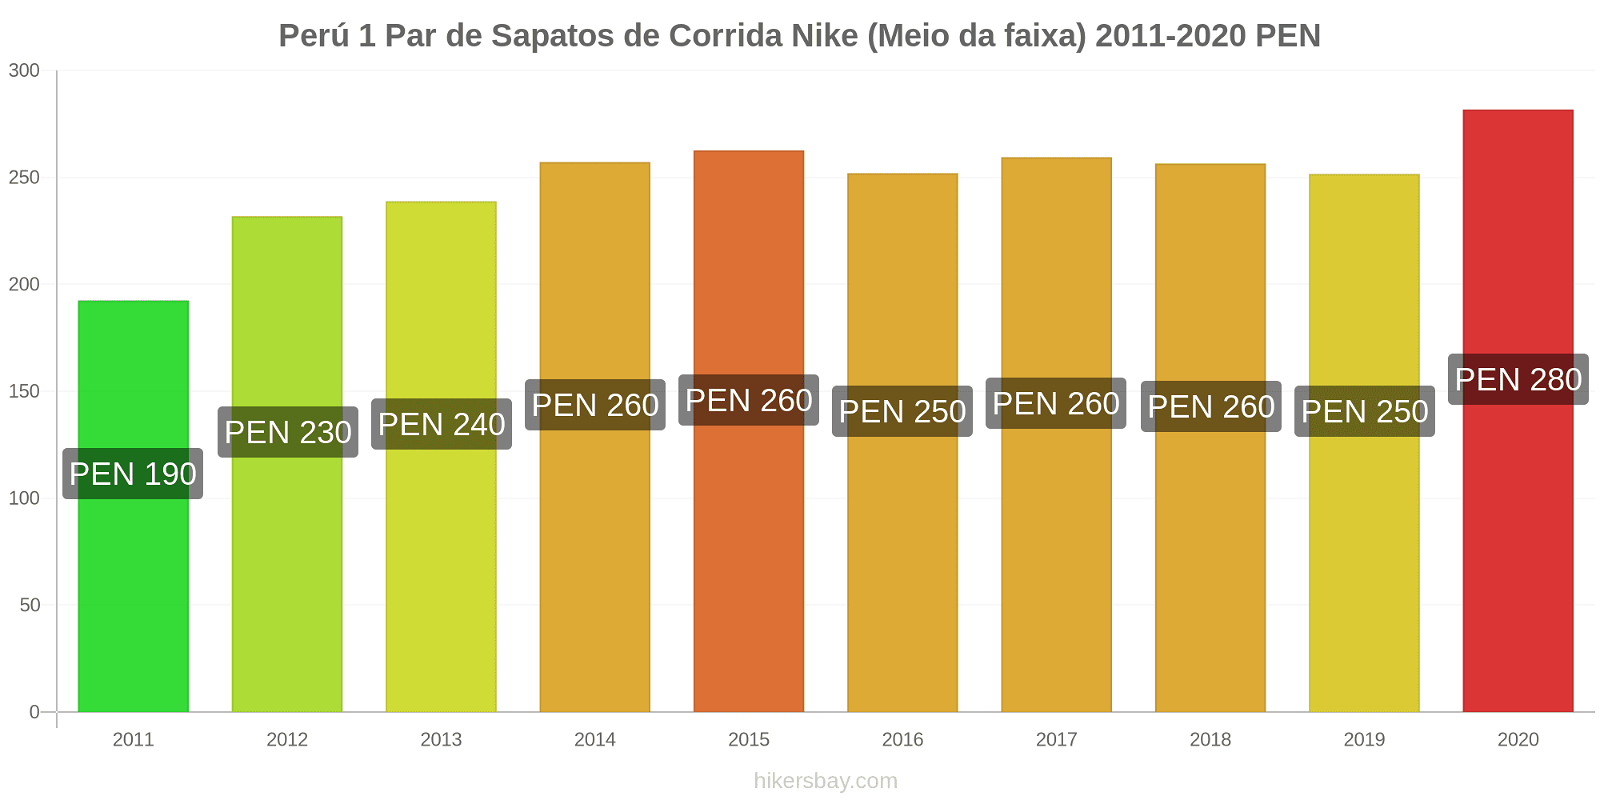 Perú variação de preço 1 par de tênis Nike (mid-range) hikersbay.com